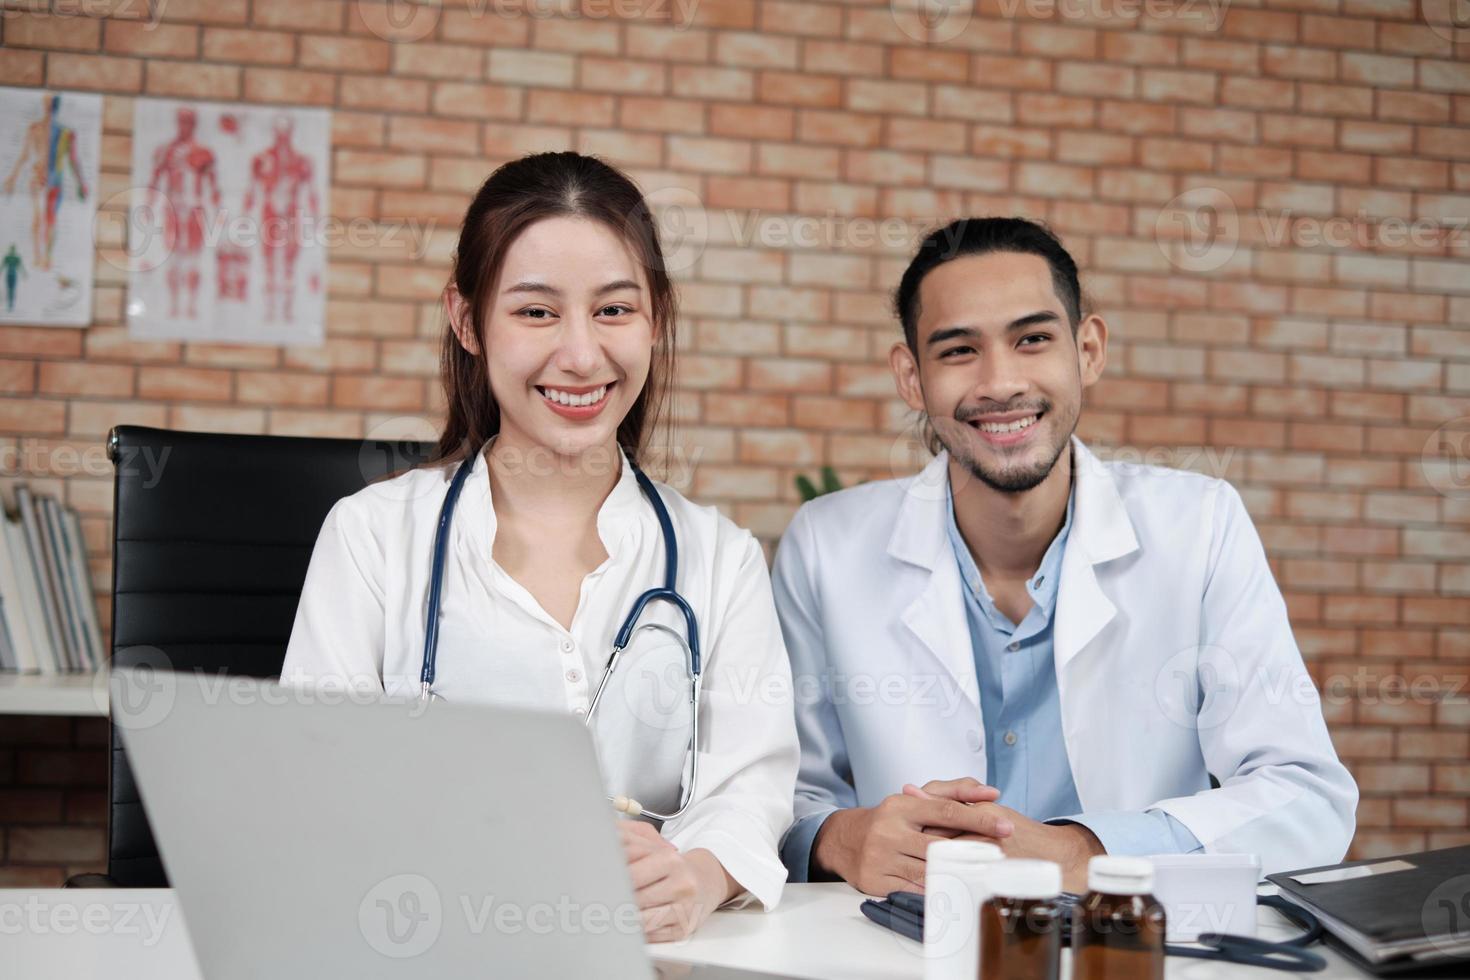 equipe de parceiros de saúde, retrato de dois jovens médicos de etnia asiática em camisas brancas com estetoscópio, sorrindo e olhando para a câmera na clínica, pessoas com experiência em tratamento profissional. foto